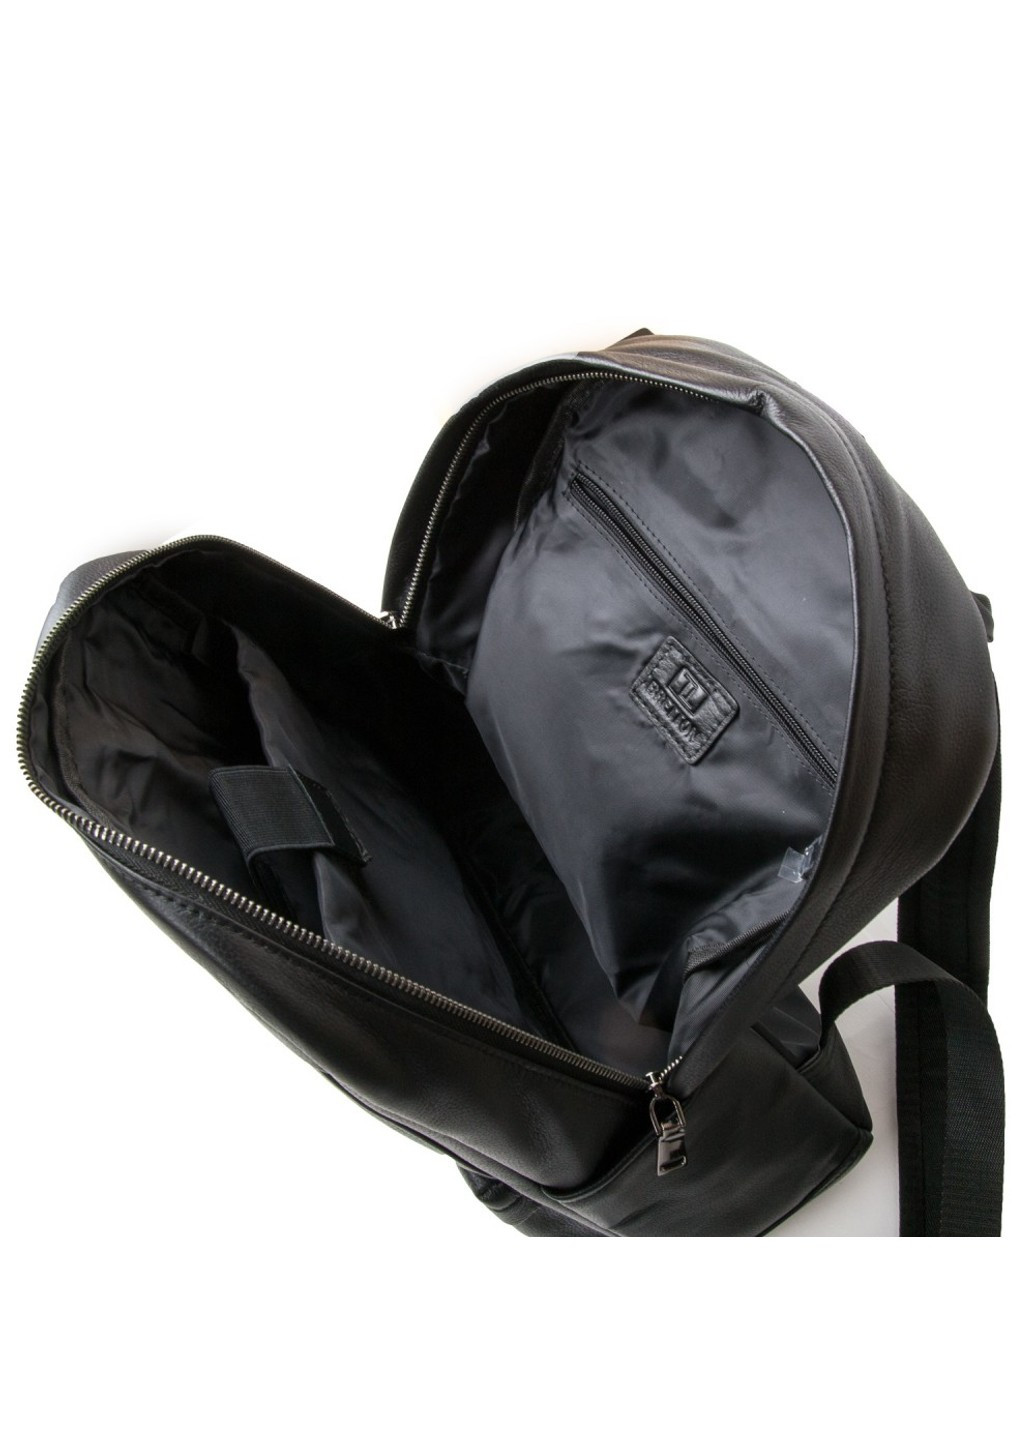 Рюкзак кожаный мужской 2004-9 black Bretton (261551288)